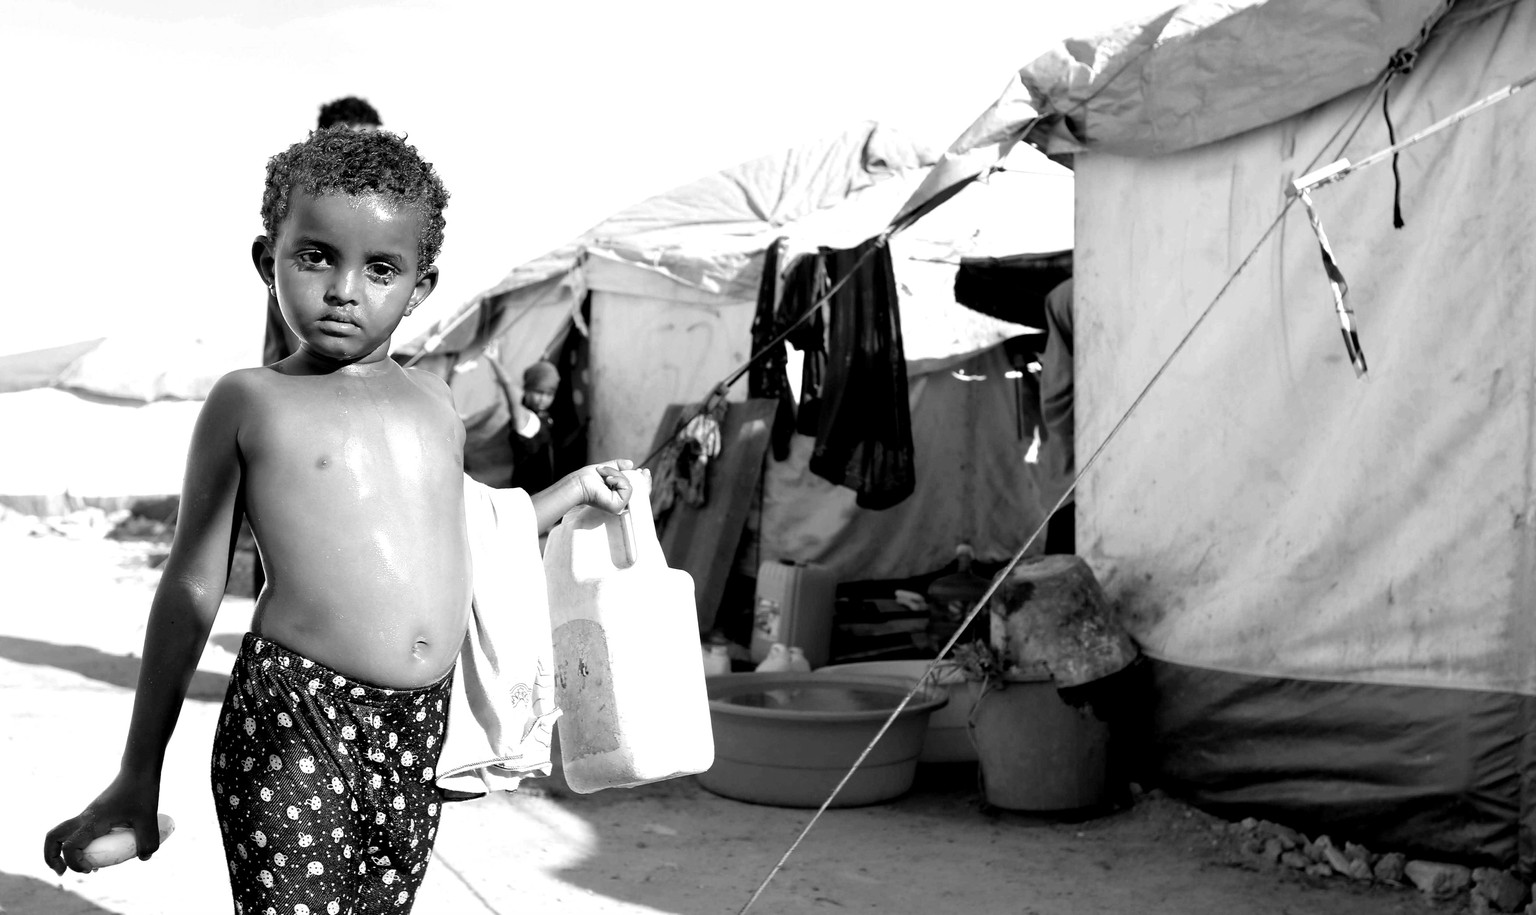 Somalia, Mogadischu, 2015: Ein jemenitischer Junge trägt einen Kanister durchs Flüchtlingscamp.